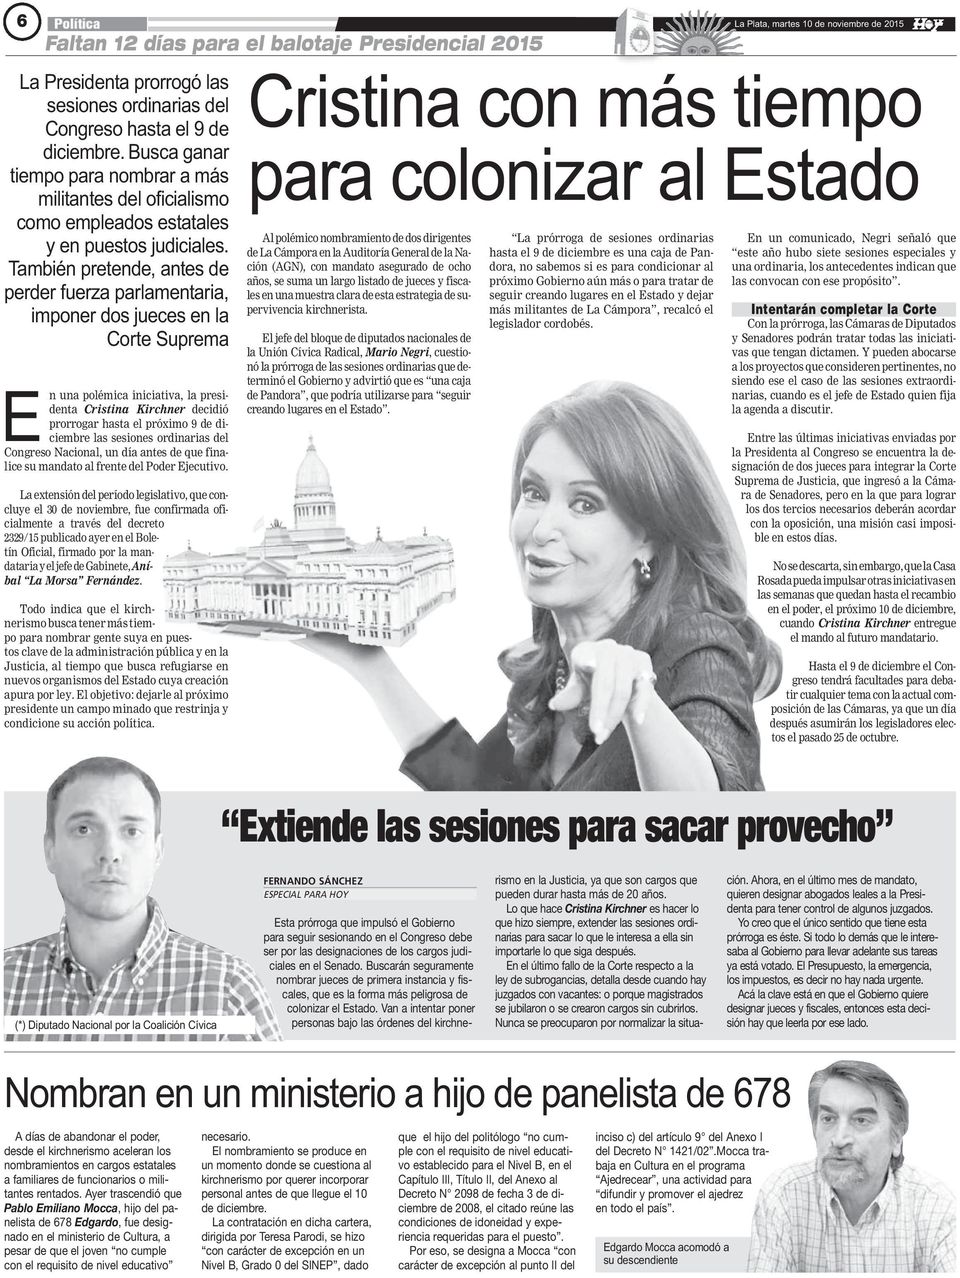 También pretende, antes de perder fuerza parlamentaria, imponer dos jueces en la Corte Suprema En una polémica iniciativa, la presidenta Cristina Kirchner decidió prorrogar hasta el próximo 9 de